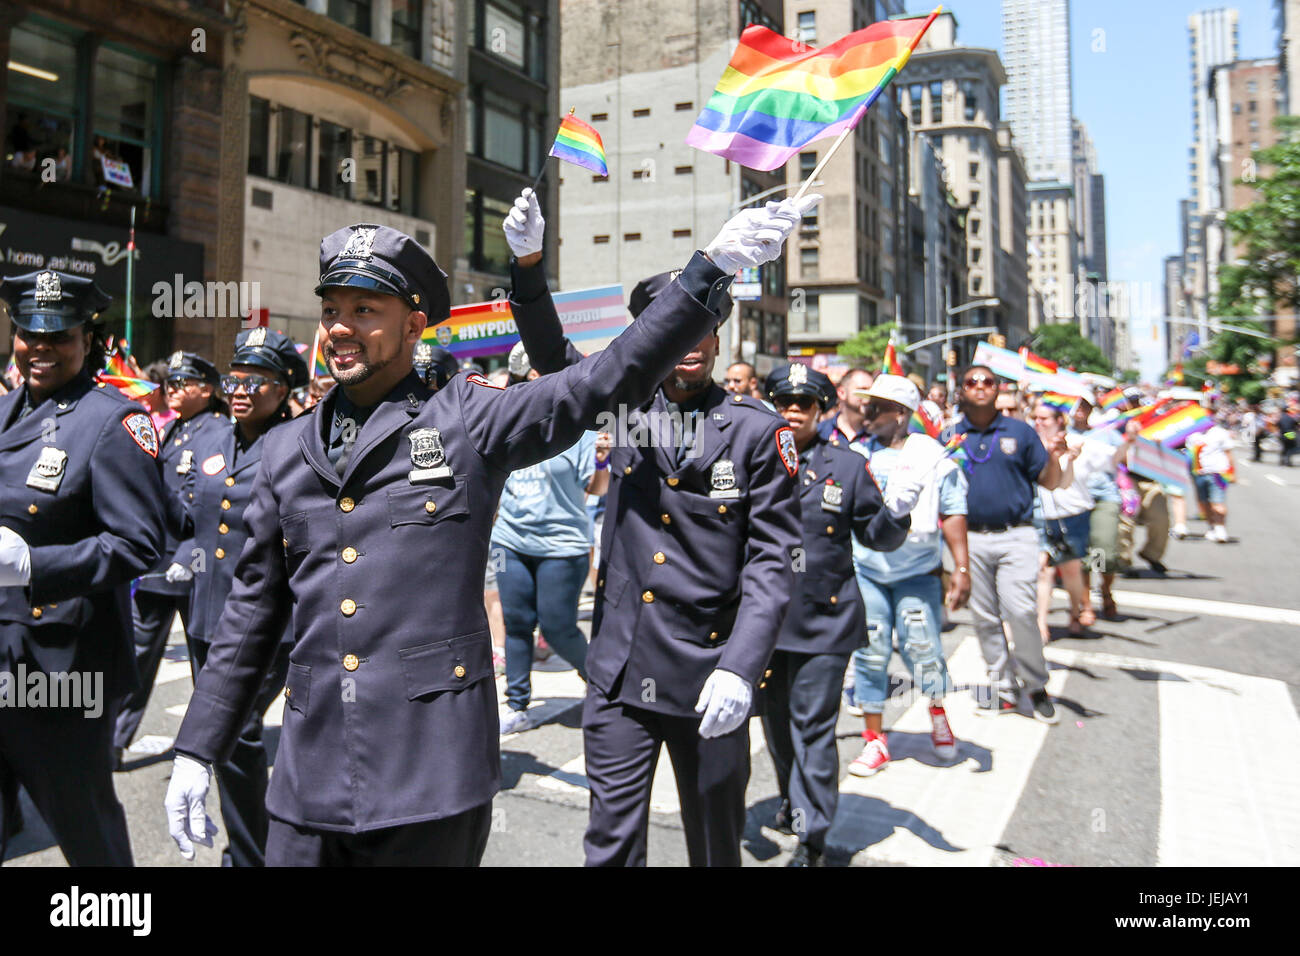 New York, Vereinigte Staaten von Amerika. 25. Juni 2017. Teilnehmer während der LGBT Pride Parade in der Stadt New York in den Vereinigten Staaten an diesem Sonntag, 25. Bildnachweis: Brasilien Foto Presse/Alamy Live-Nachrichten Stockfoto